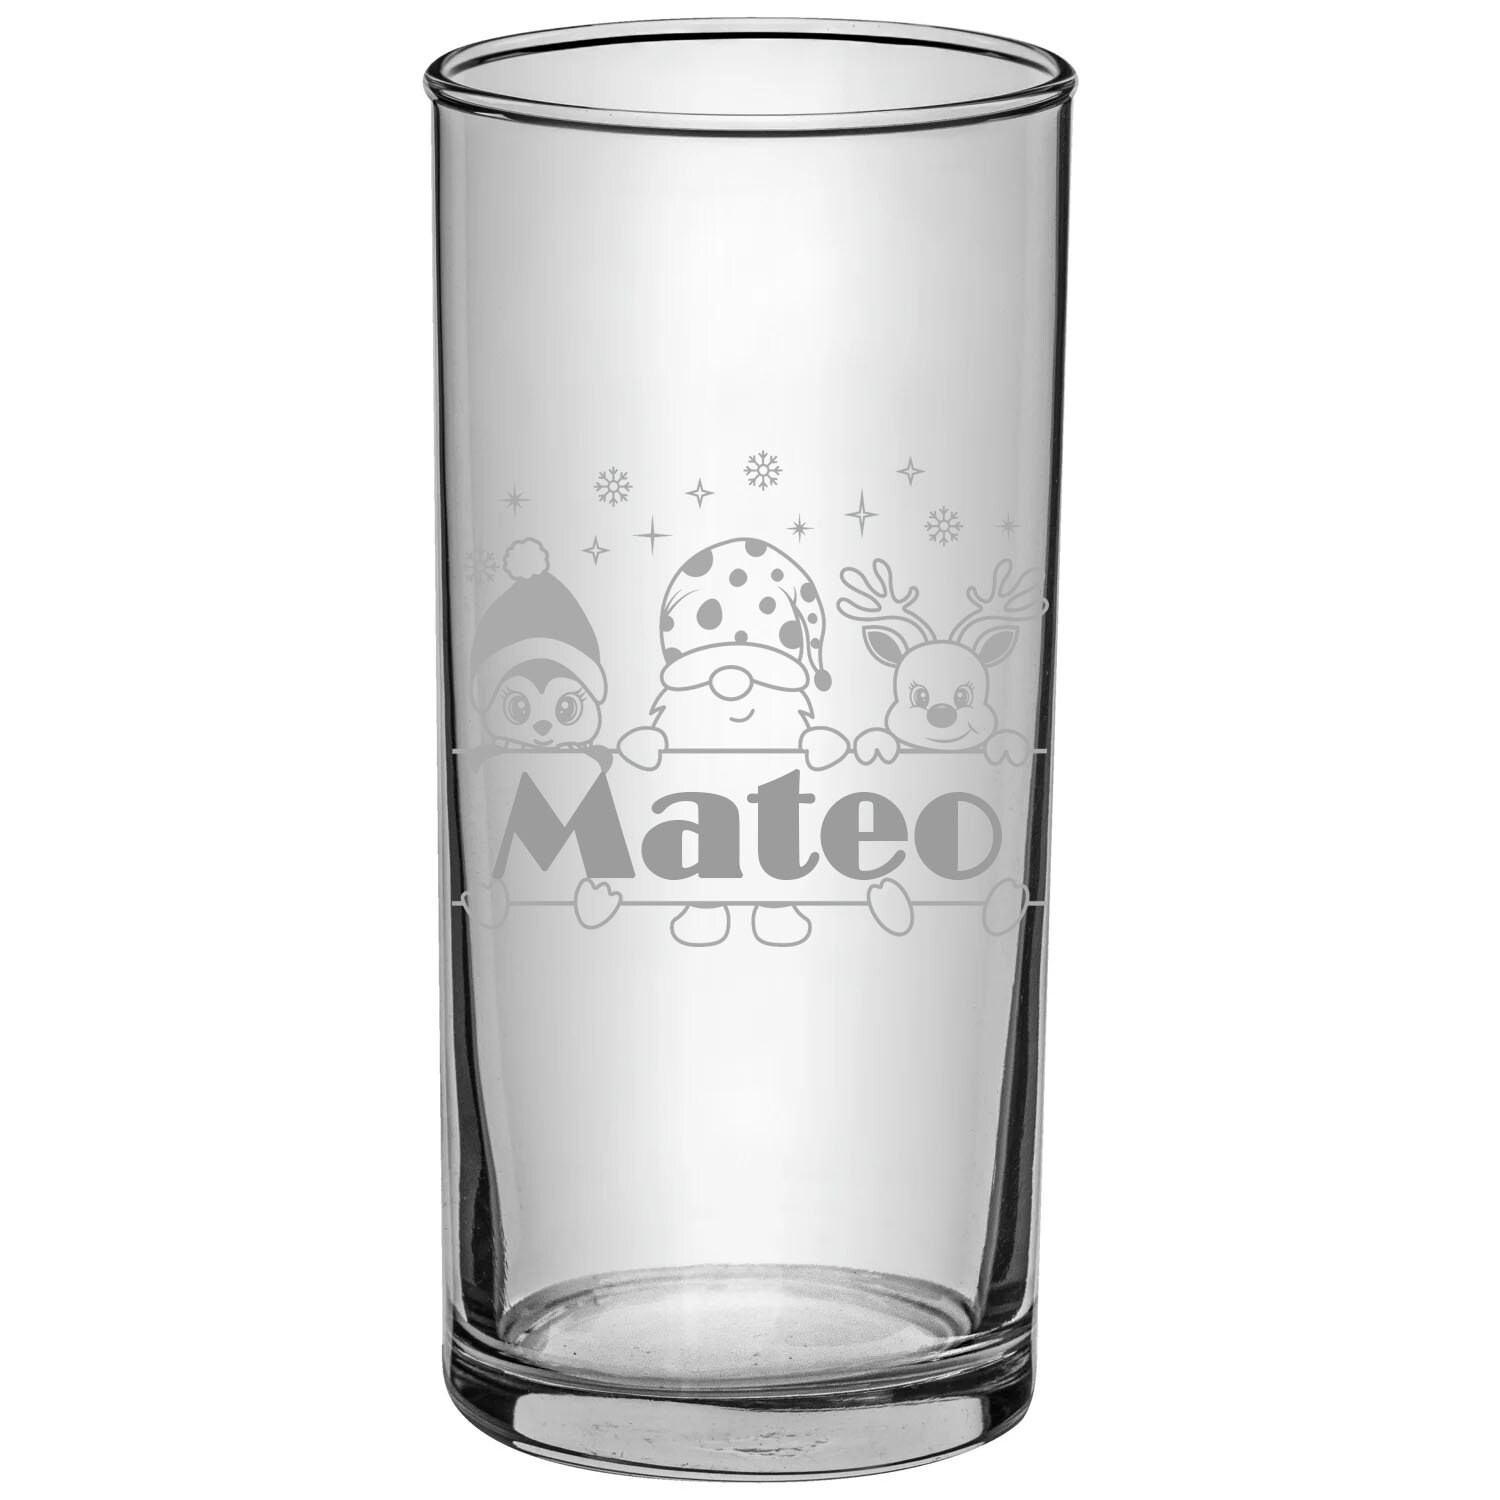 Trinkglas mit Weihnachtsmotiv, mit Namen personalisiert, Weihnachtsgeschenk 2